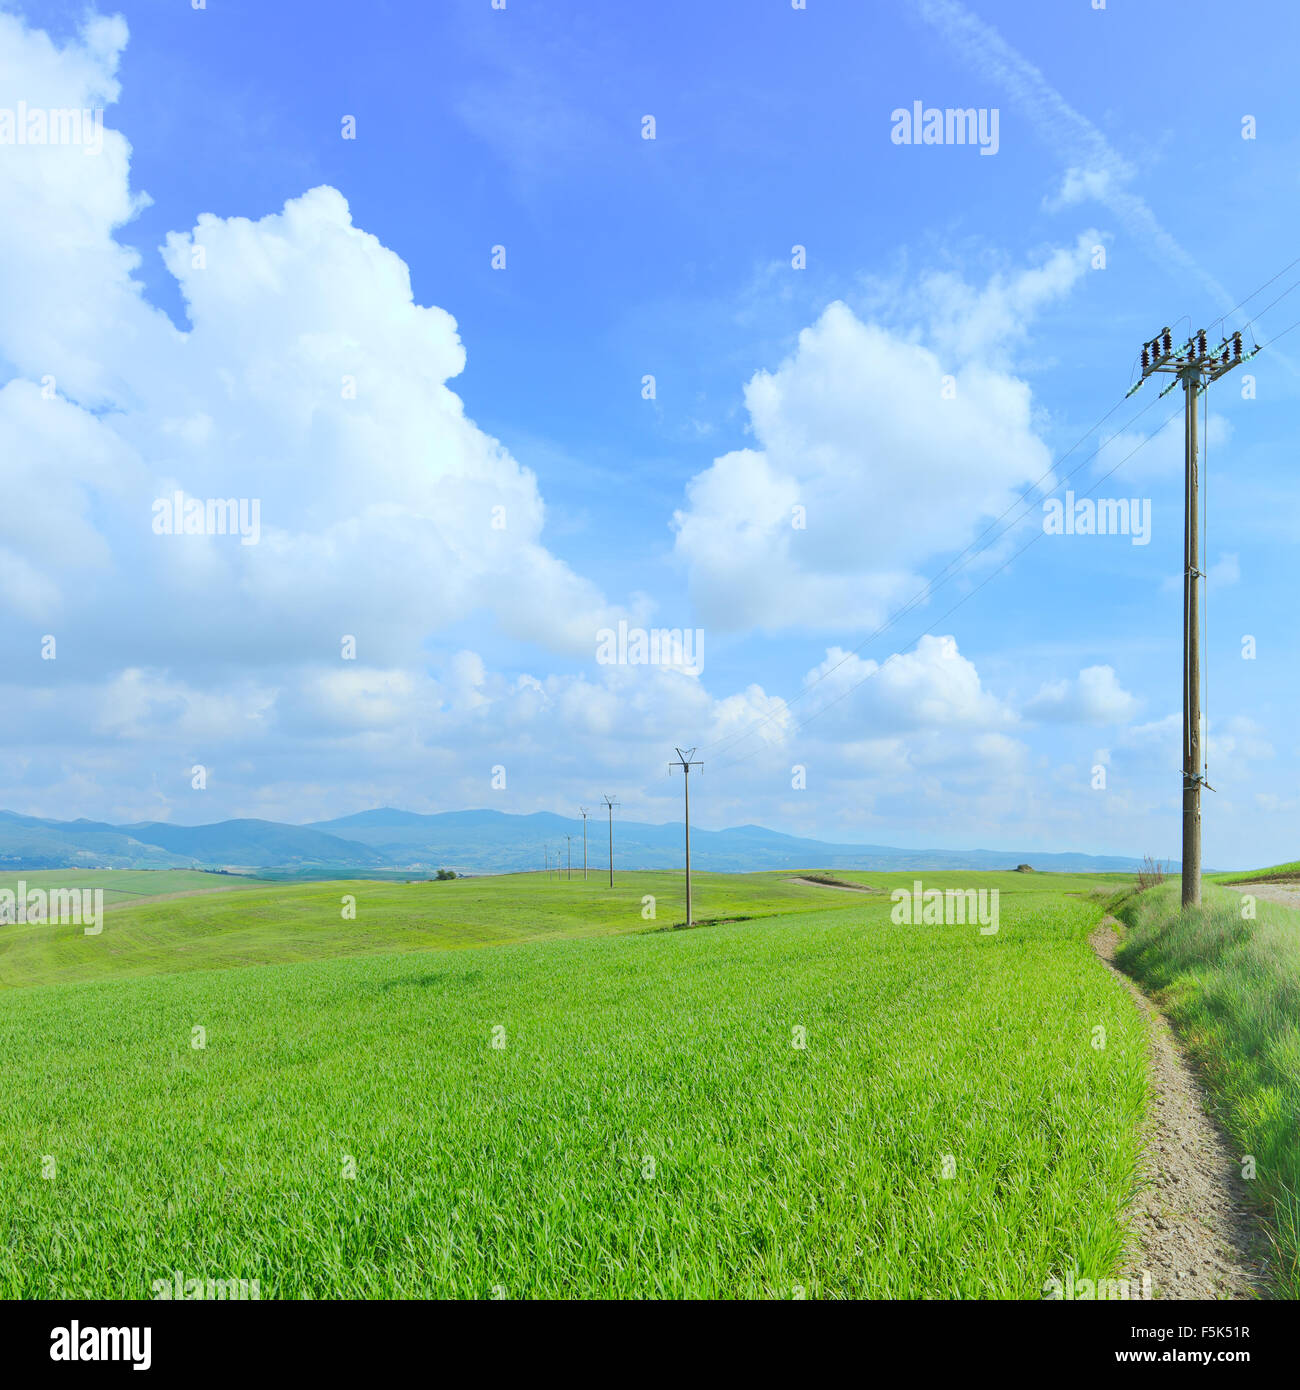 Postes de líneas de energía eléctrica en un campo verde y una luz azul cielo nublado en temporada de primavera.La Toscana, Italia. Foto de stock